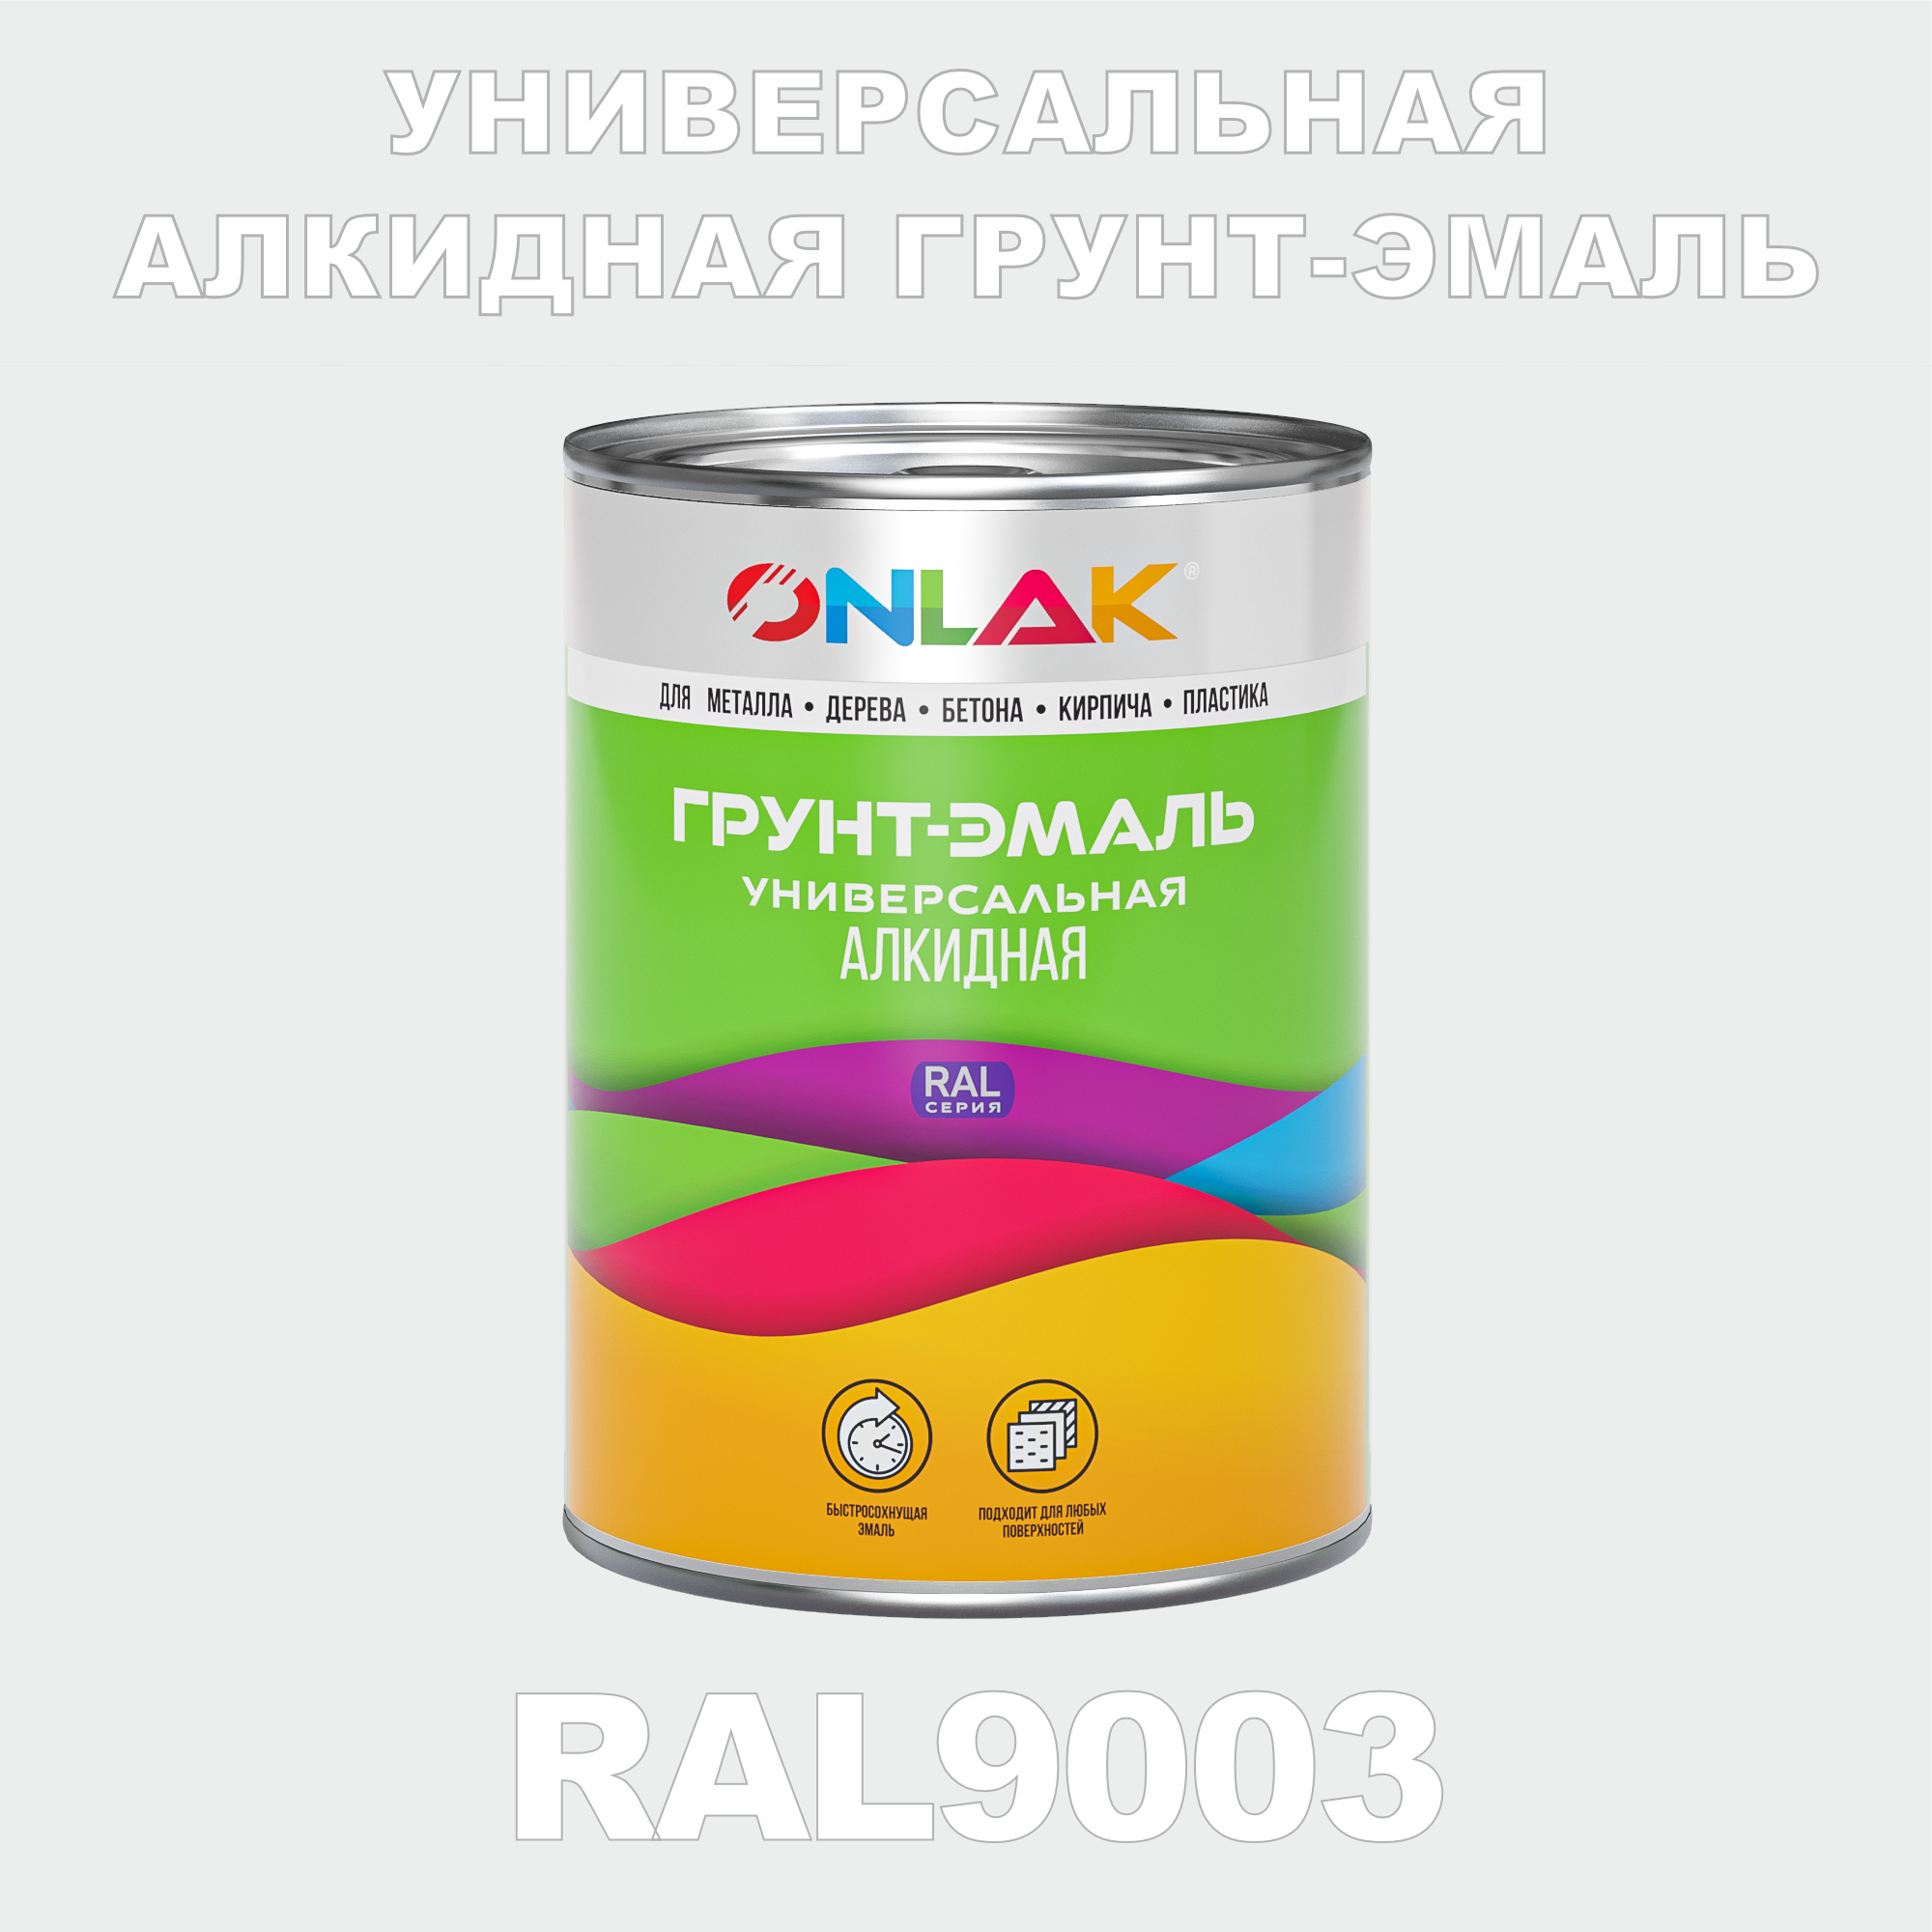 Грунт-эмаль ONLAK 1К RAL9003 антикоррозионная алкидная по металлу по ржавчине 1 кг грунт эмаль yollo по ржавчине алкидная серая 0 9 кг